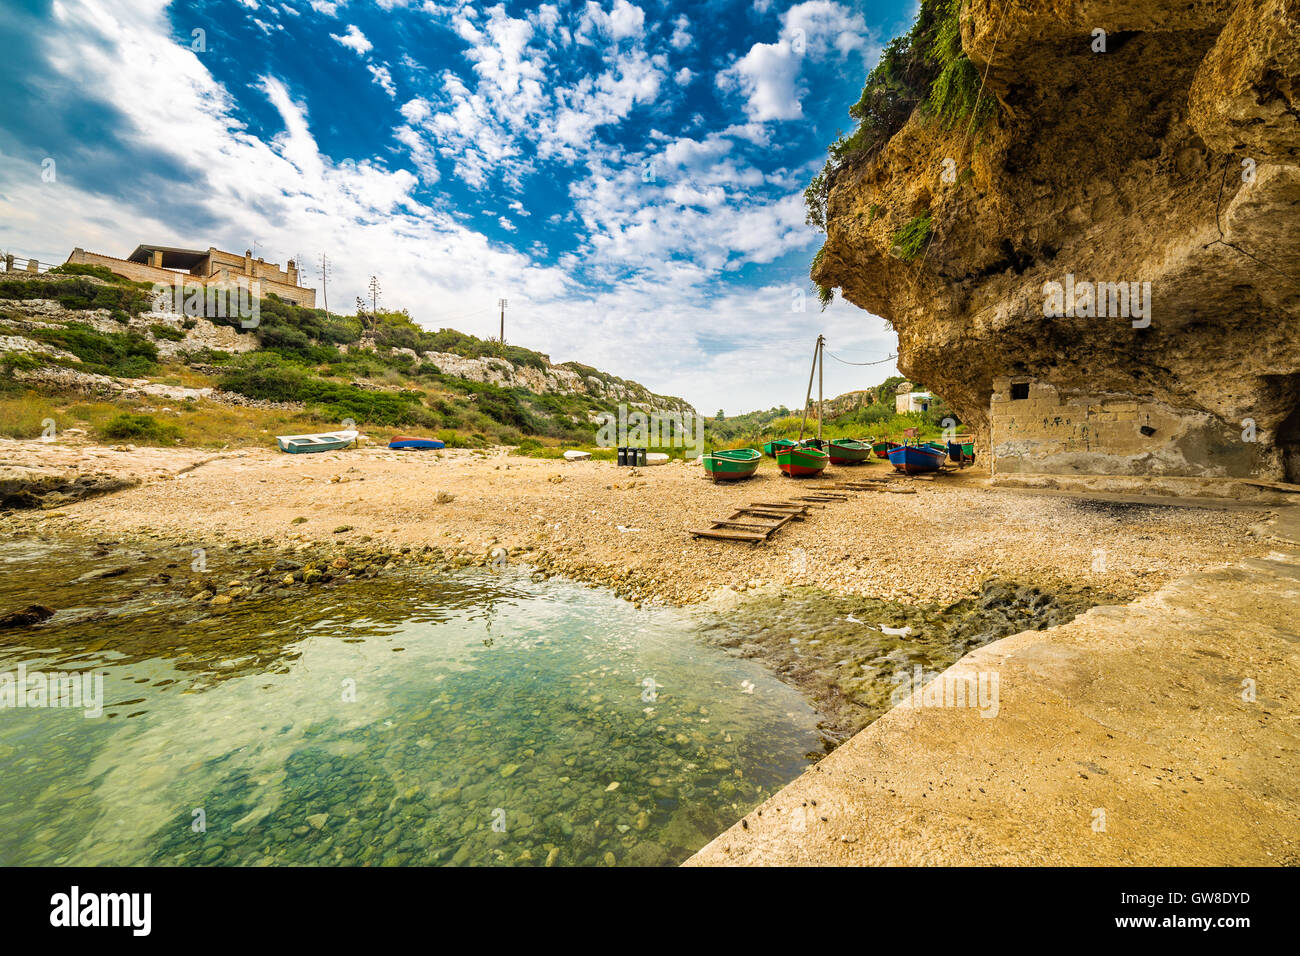 Colorate barche a remi arenarsi su una baia della costa della Puglia in Italia meridionale Foto Stock